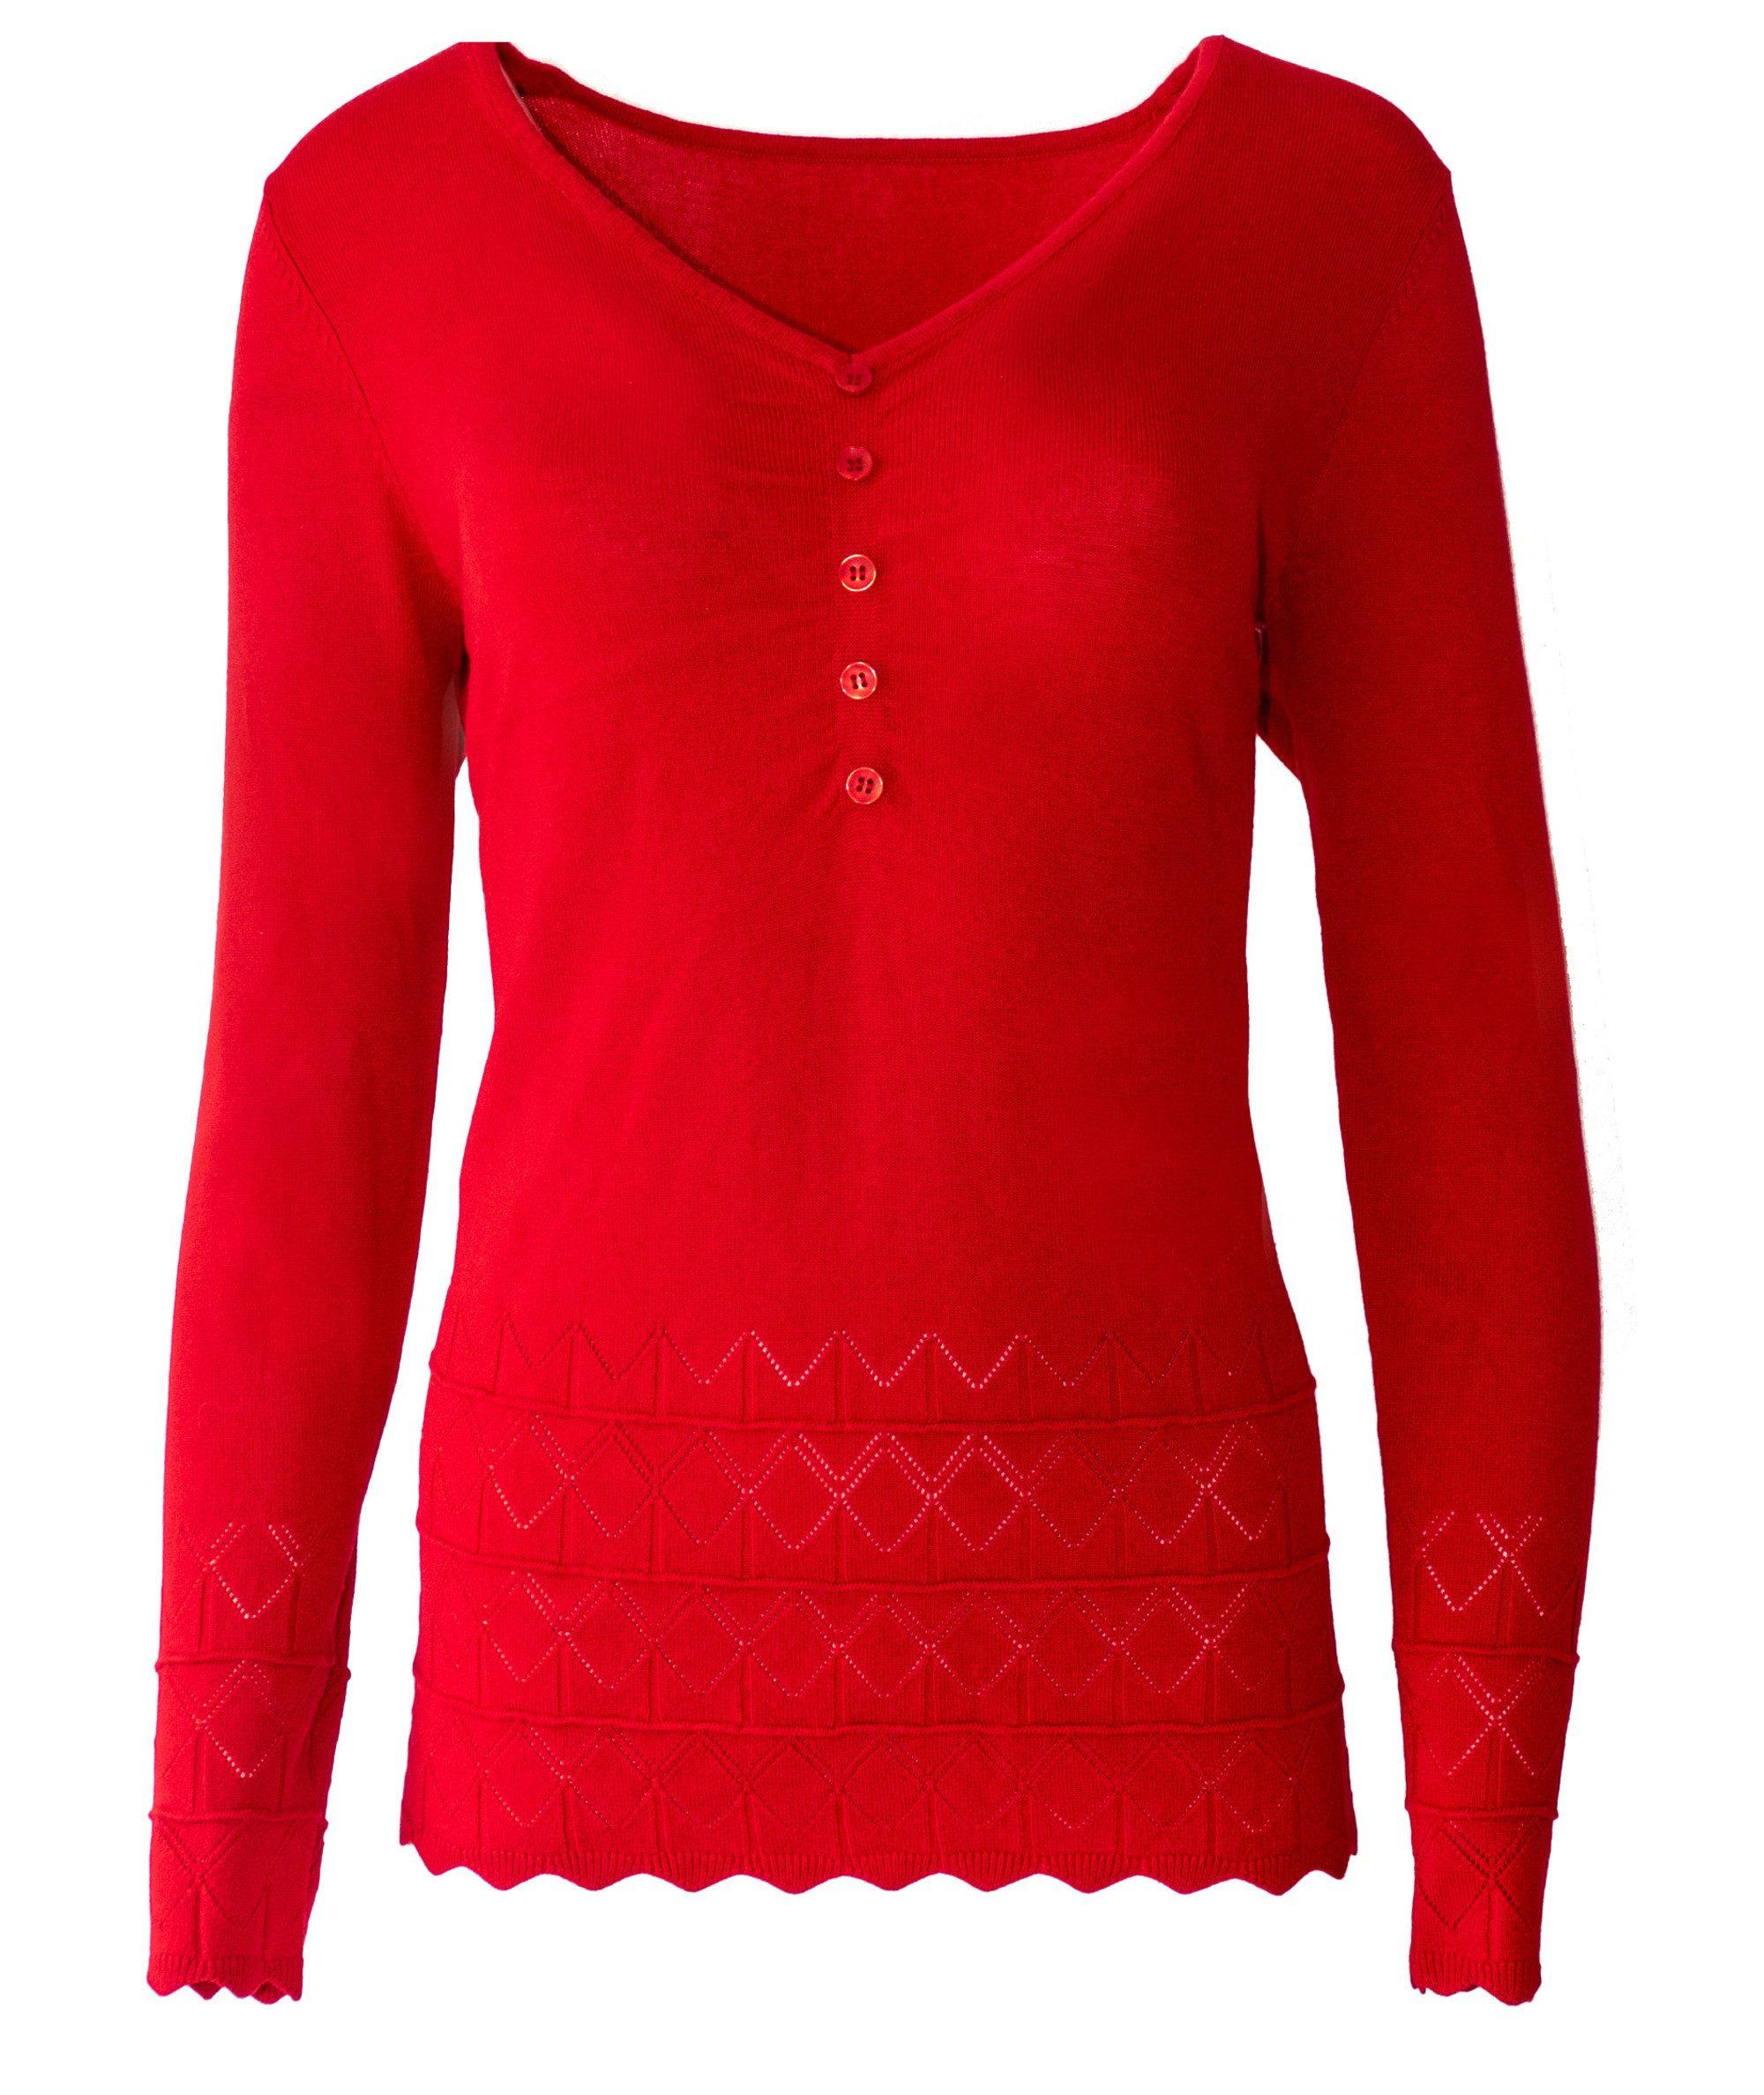 Passioni 3/4 Arm-Pullover Roter Pullover mit Rautenmuster und Streifen und einem V-Ausschnitt V-Ausschnitt, Rot, Rautenmuster, Streifen, perforiert